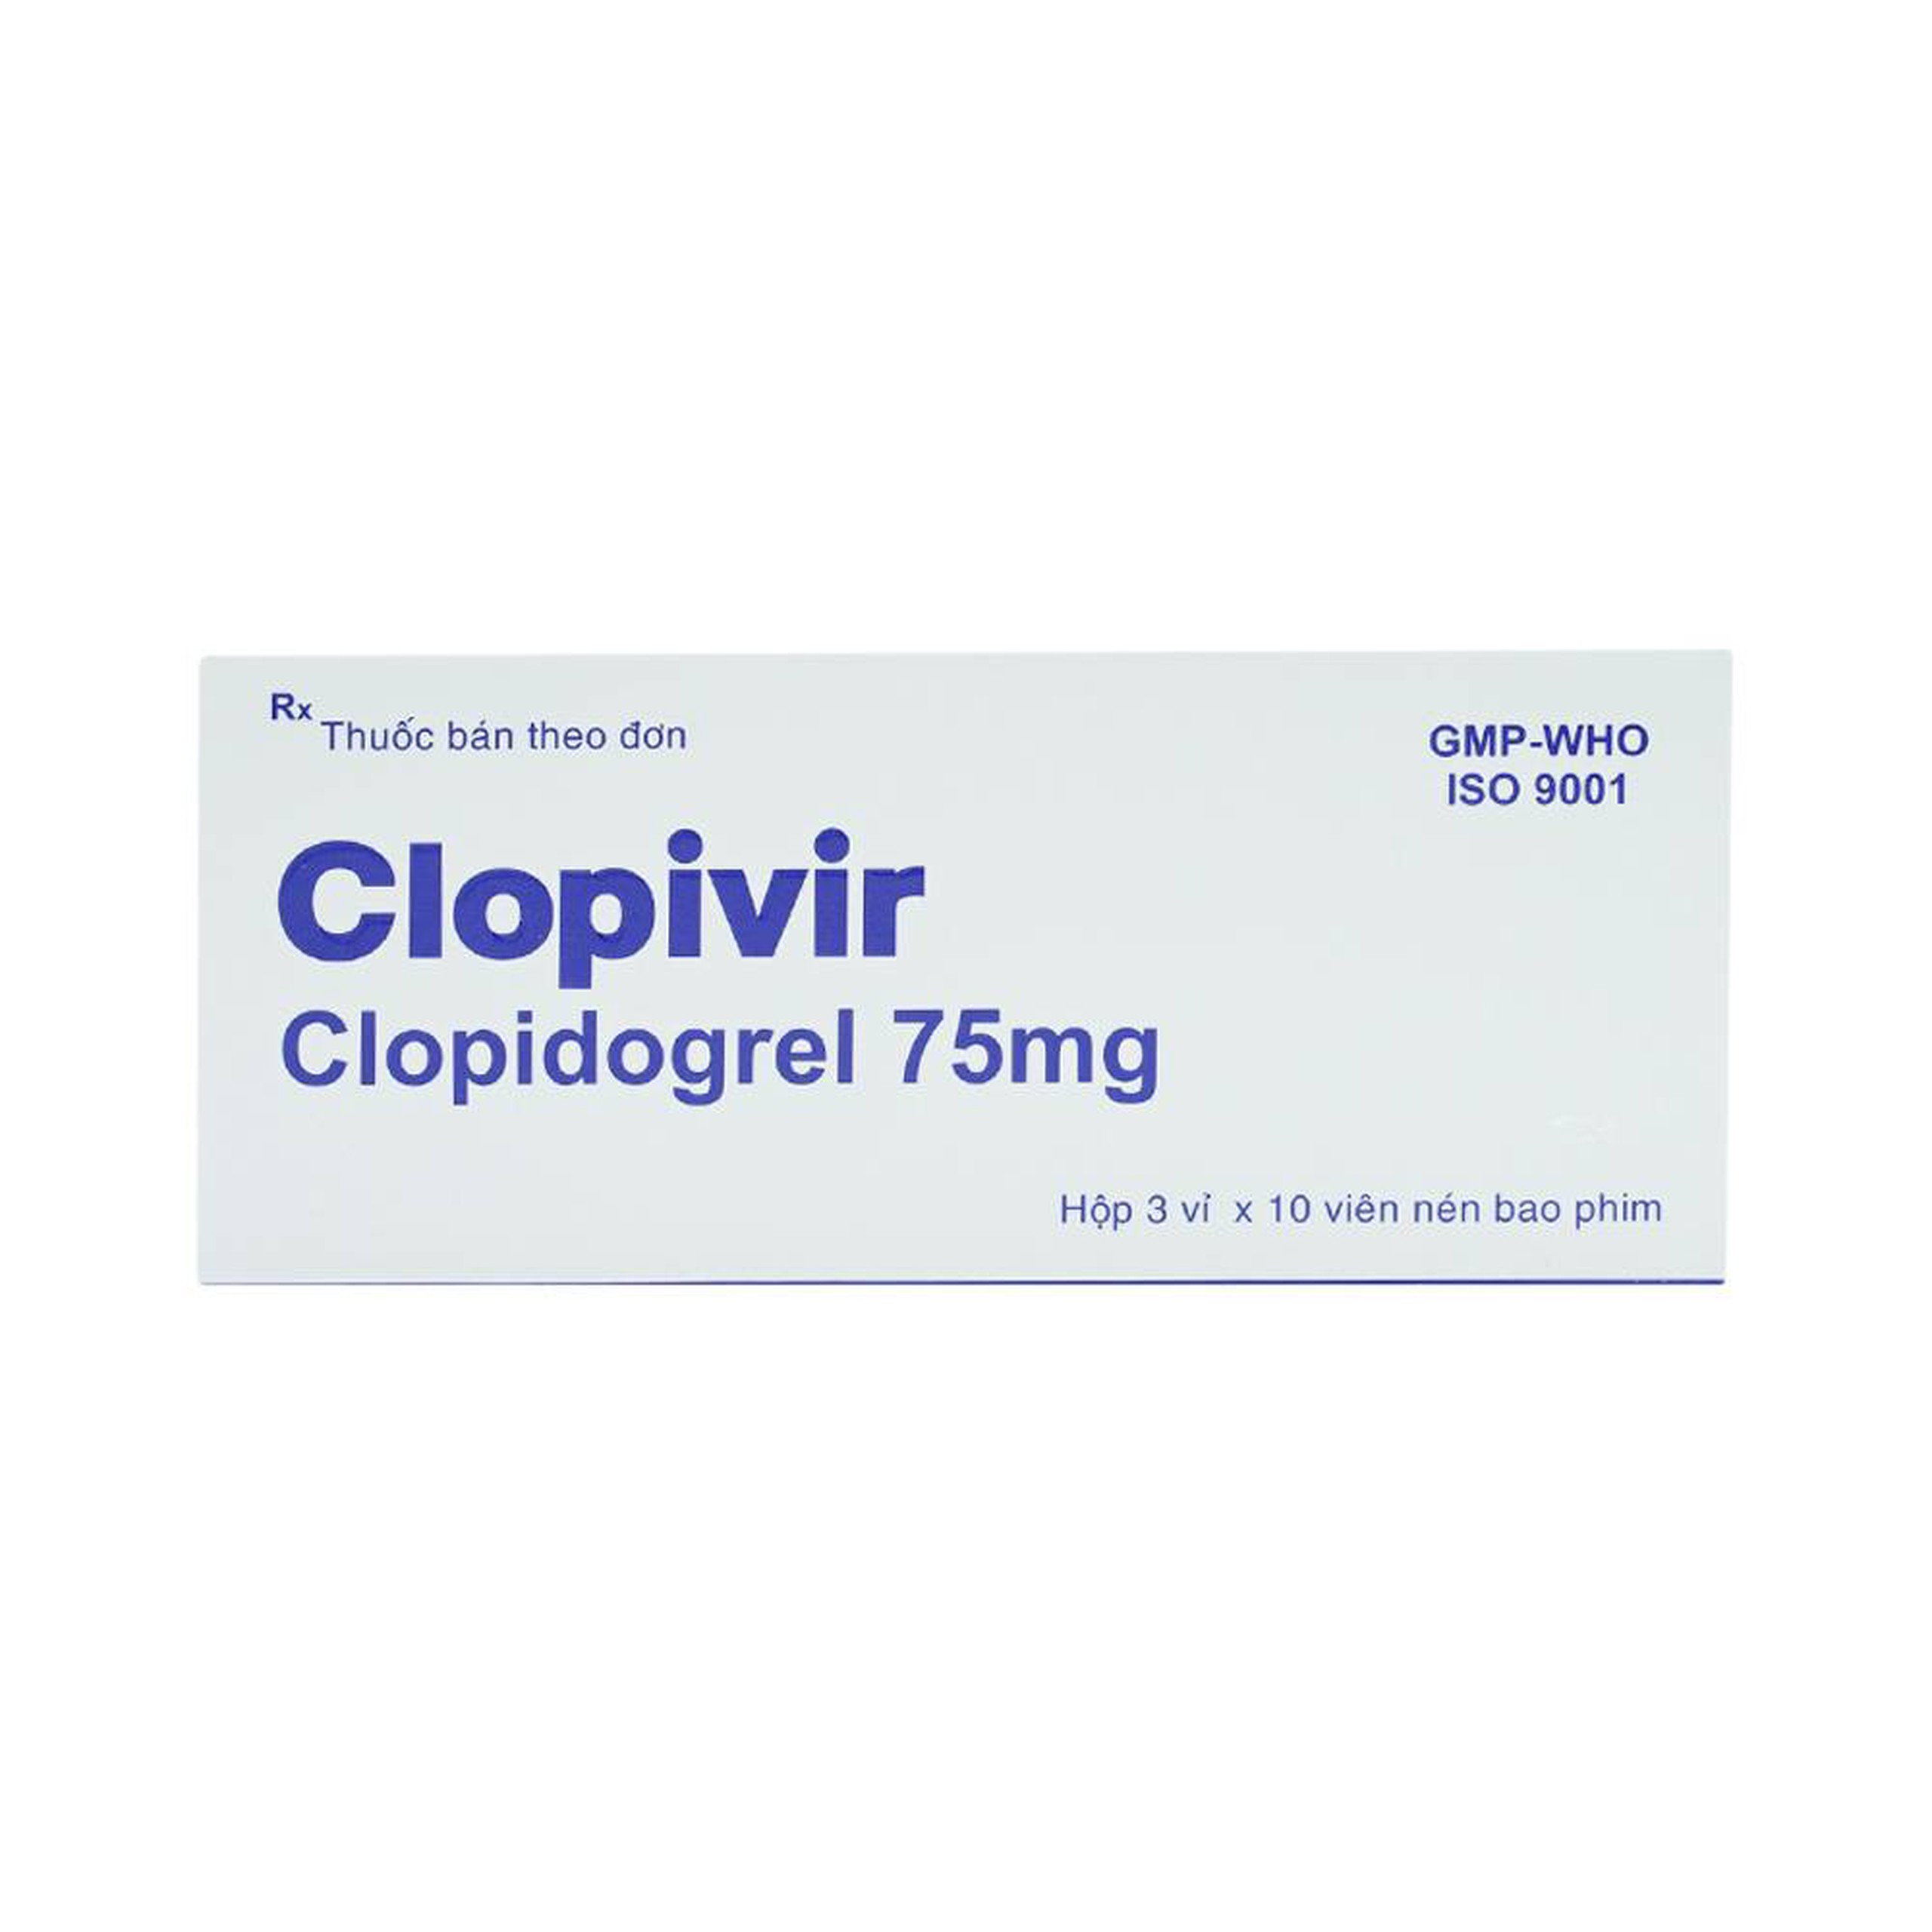 Thuốc Clopivir 75mg Bidiphar phòng ngừa nhồi máu cơ tim, đột quỵ (30 viên)